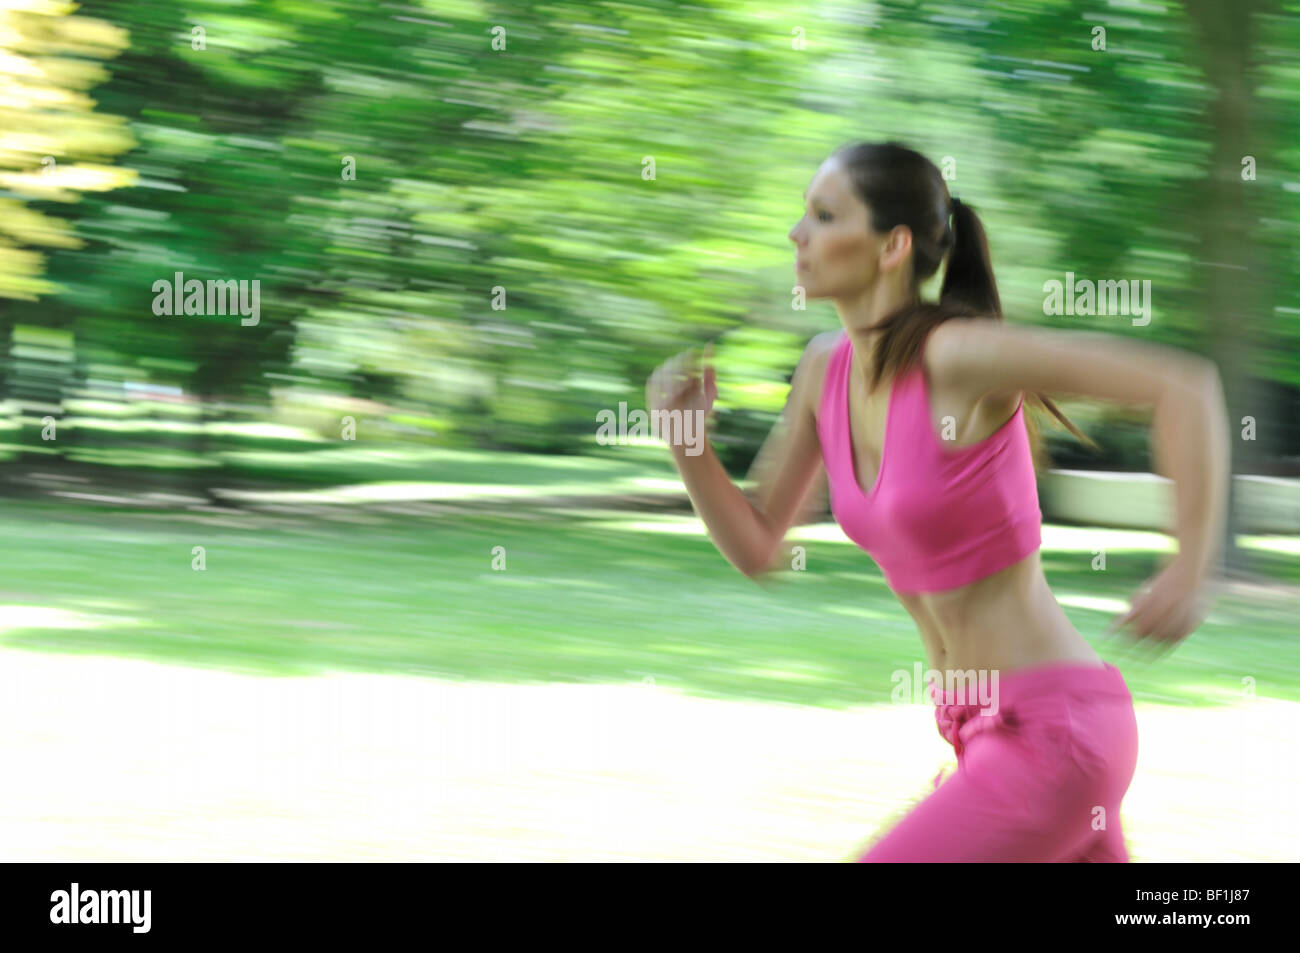 Junger Mensch (Frau) draußen im Park laufen auf sonnigen Tag - Bewegung blurr Stockfoto